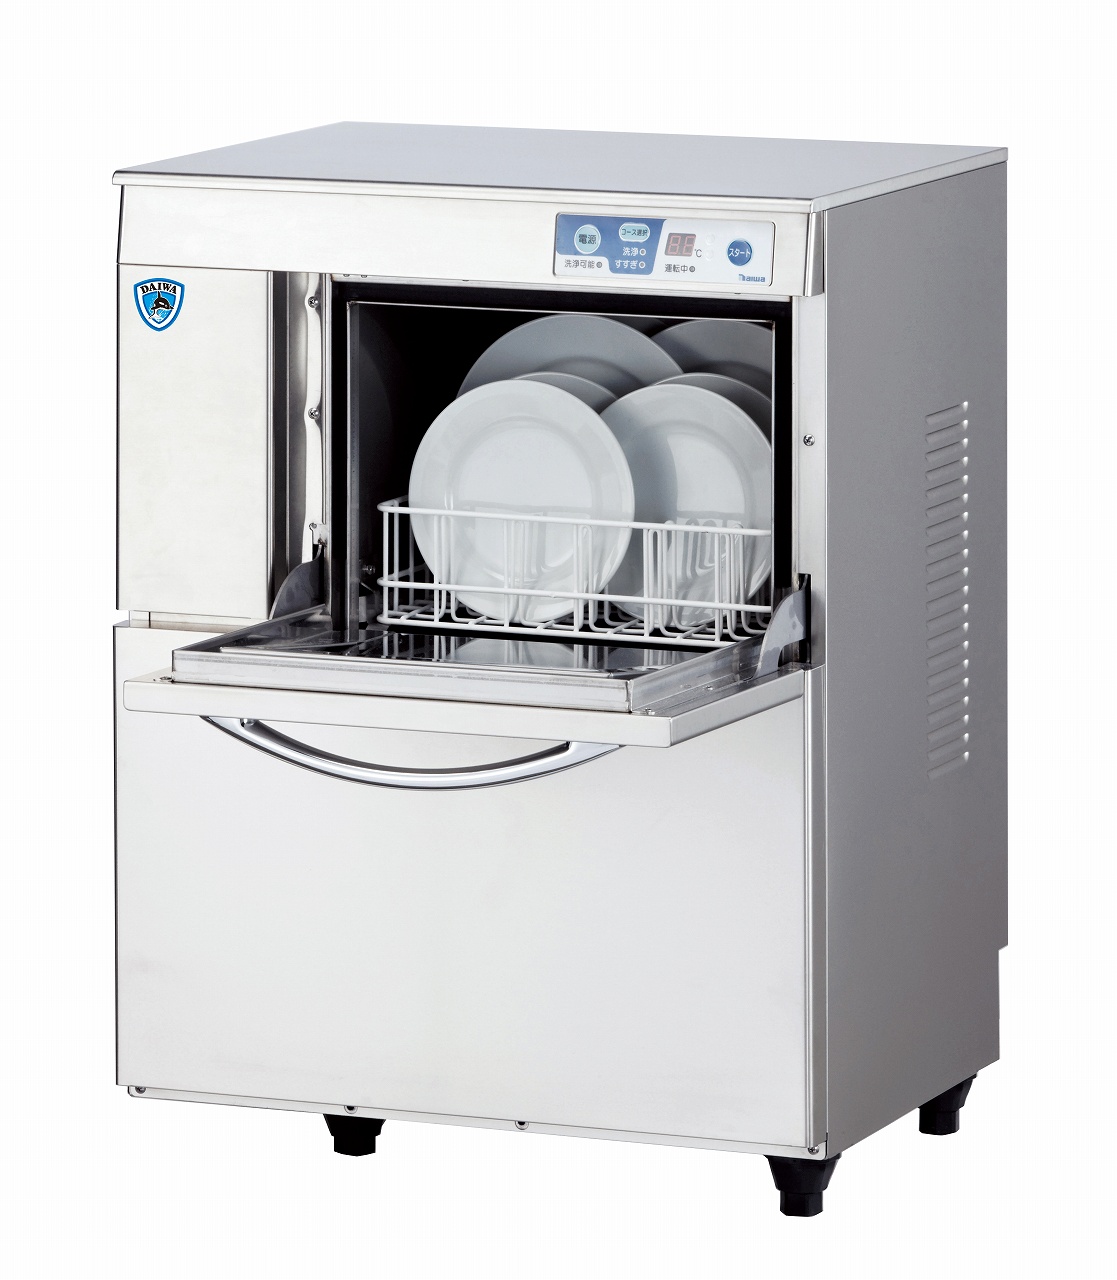 食器洗浄機 | 製品情報 | 大和冷機工業株式会社